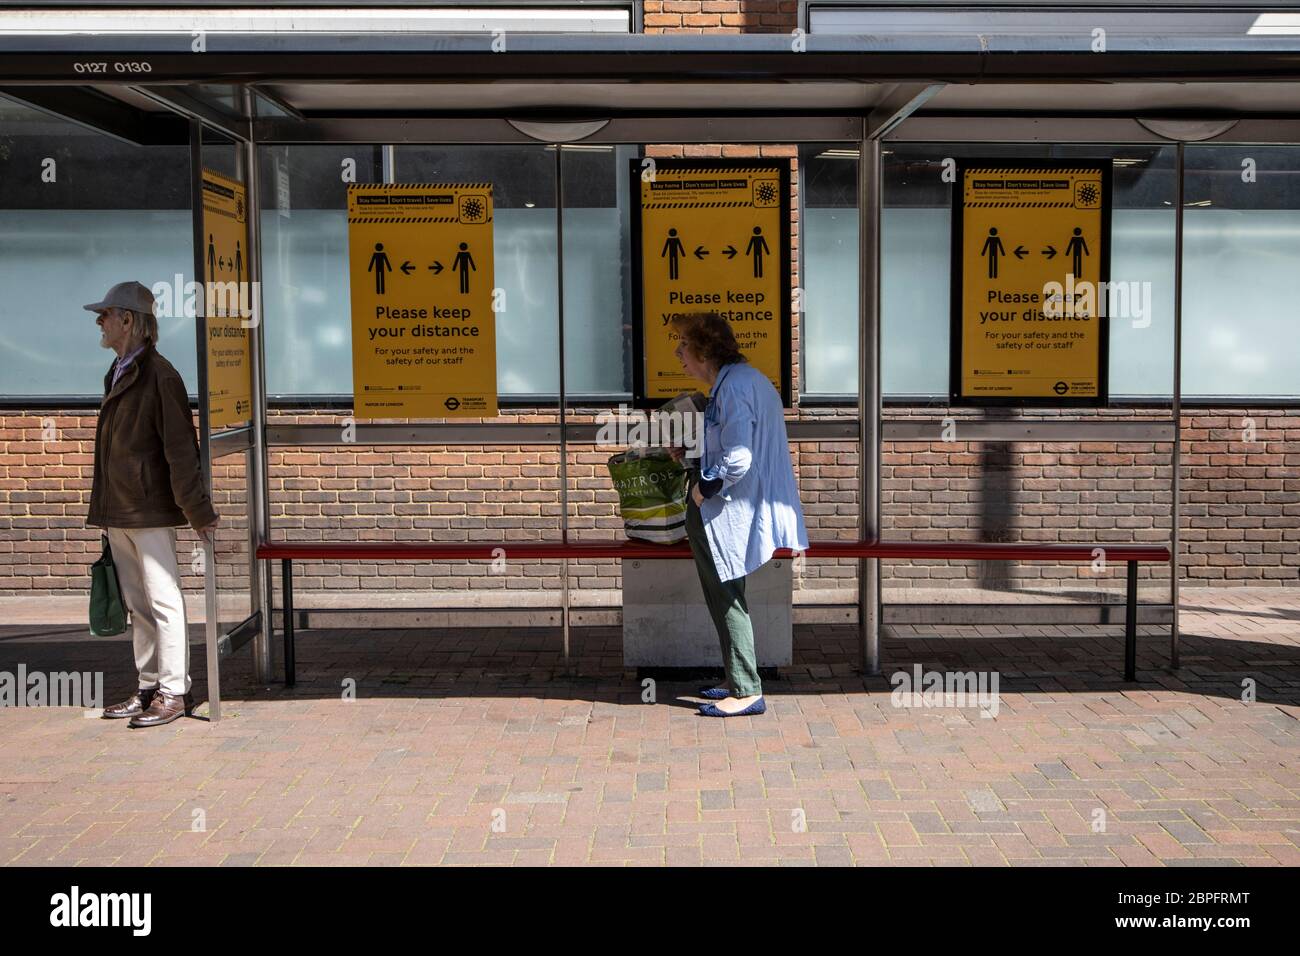 Una coppia anziana si trova a 2 metri di distanza in una fermata dell'autobus raccomandata dalle linee guida per l'allontanamento sociale della pandemia del coronavirus, Richmond upon Thames, UK Foto Stock